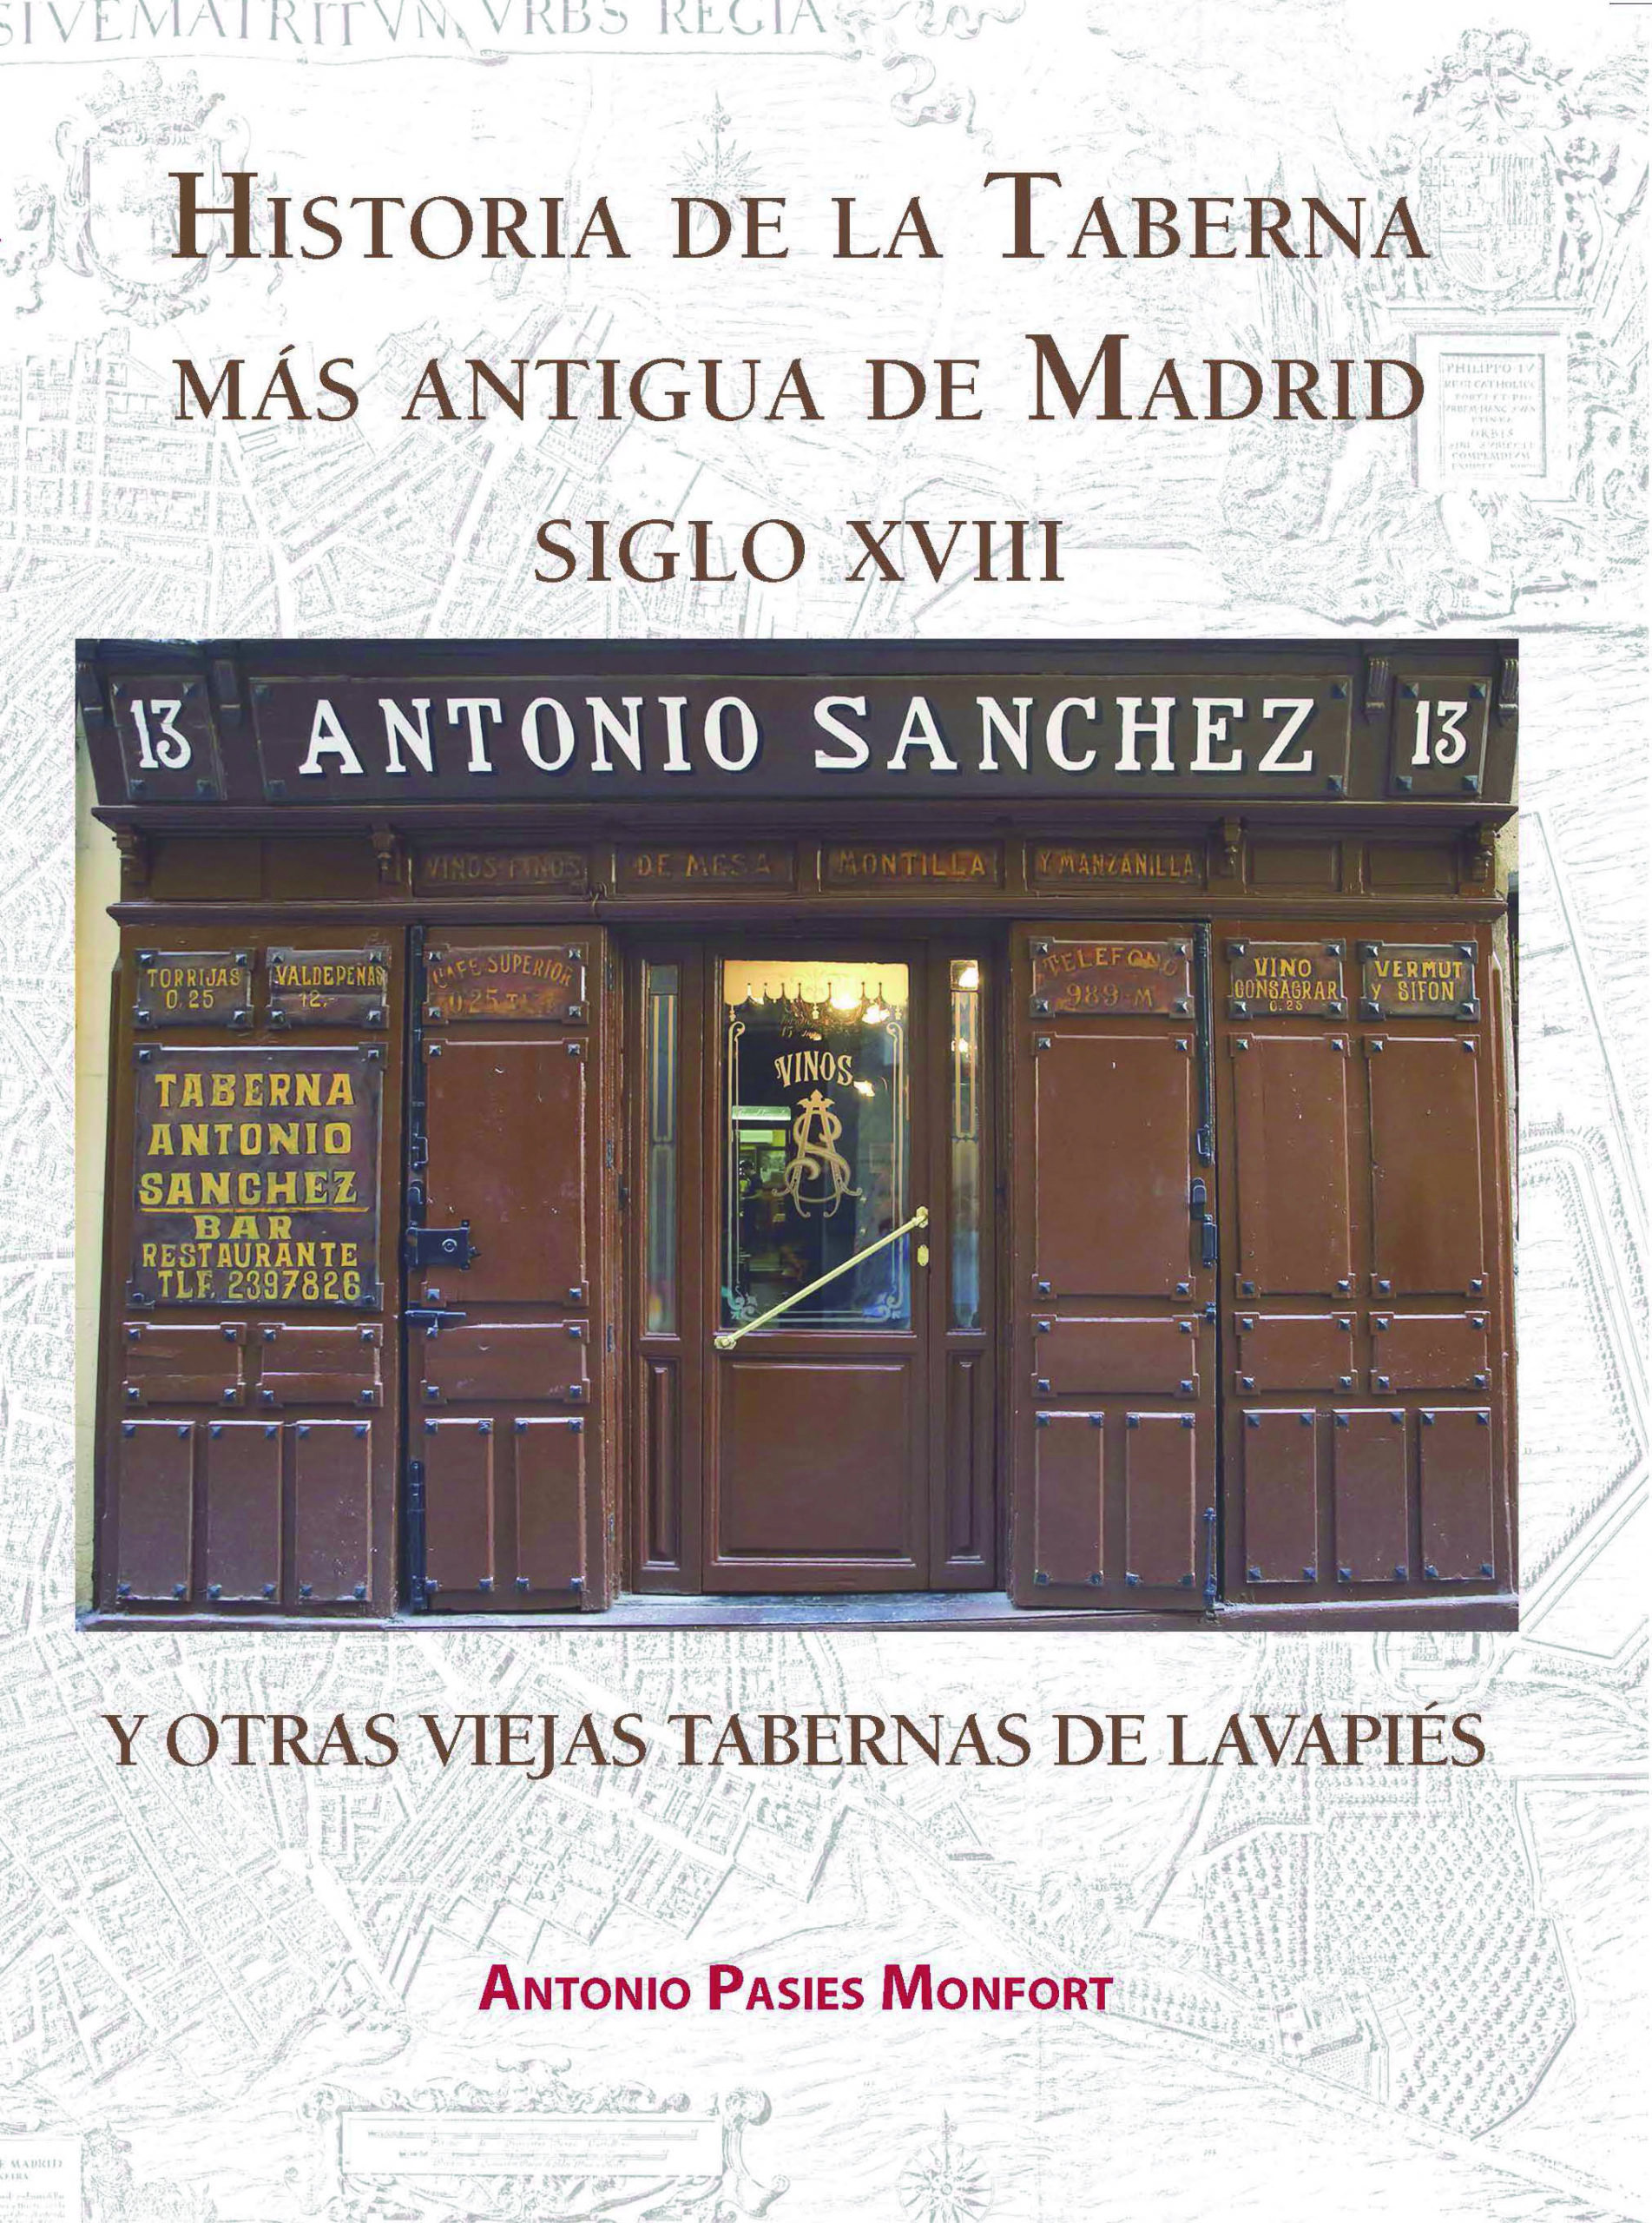 Recomendamos: Historia de la taberna más antigua de Madrid